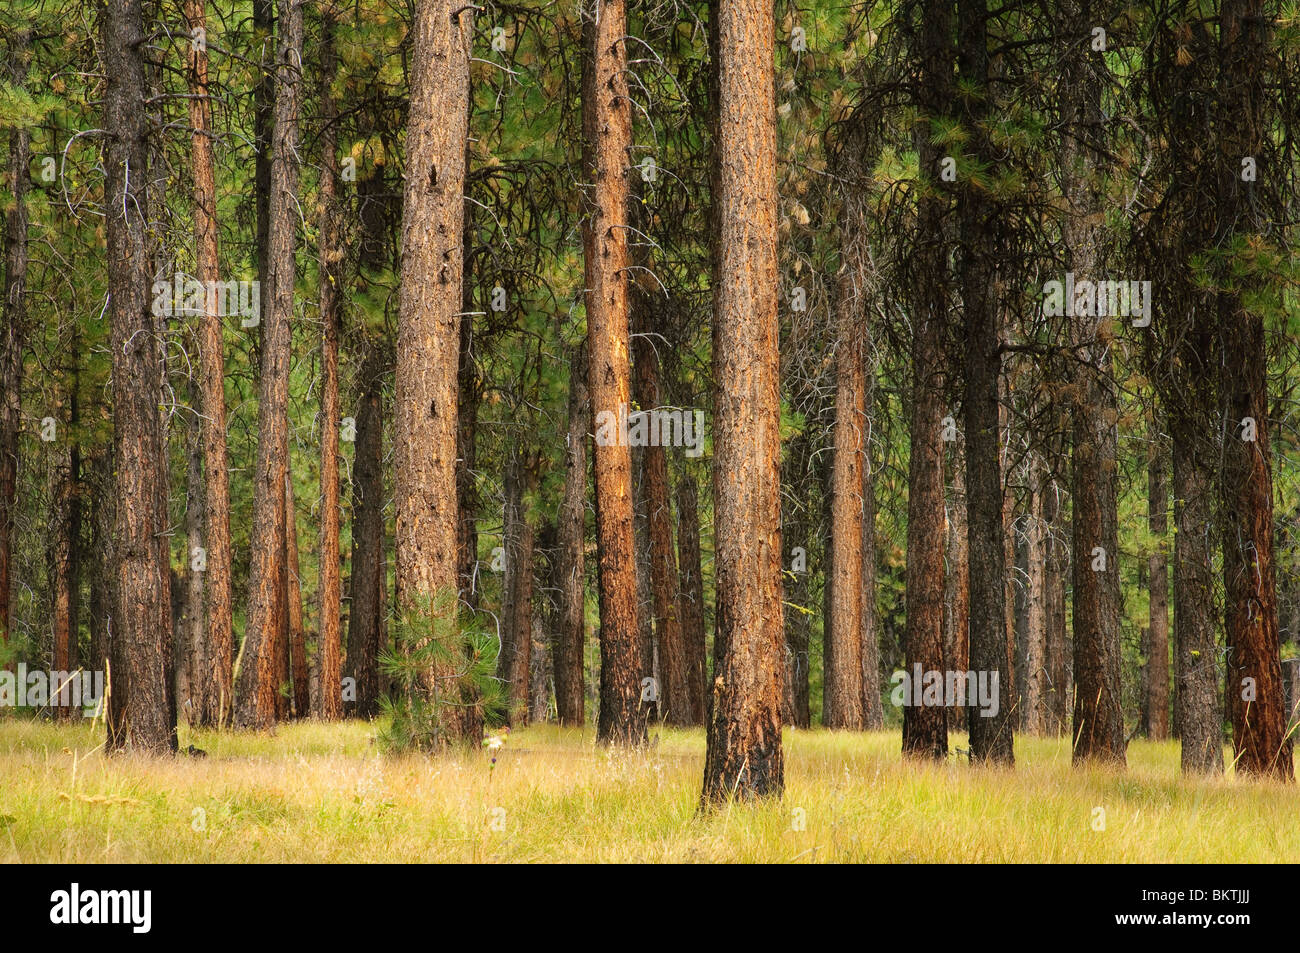 Ponderosa pine trees, Wallowa-Whitman National Forest, Blue Mountains, Oregon. Stock Photo